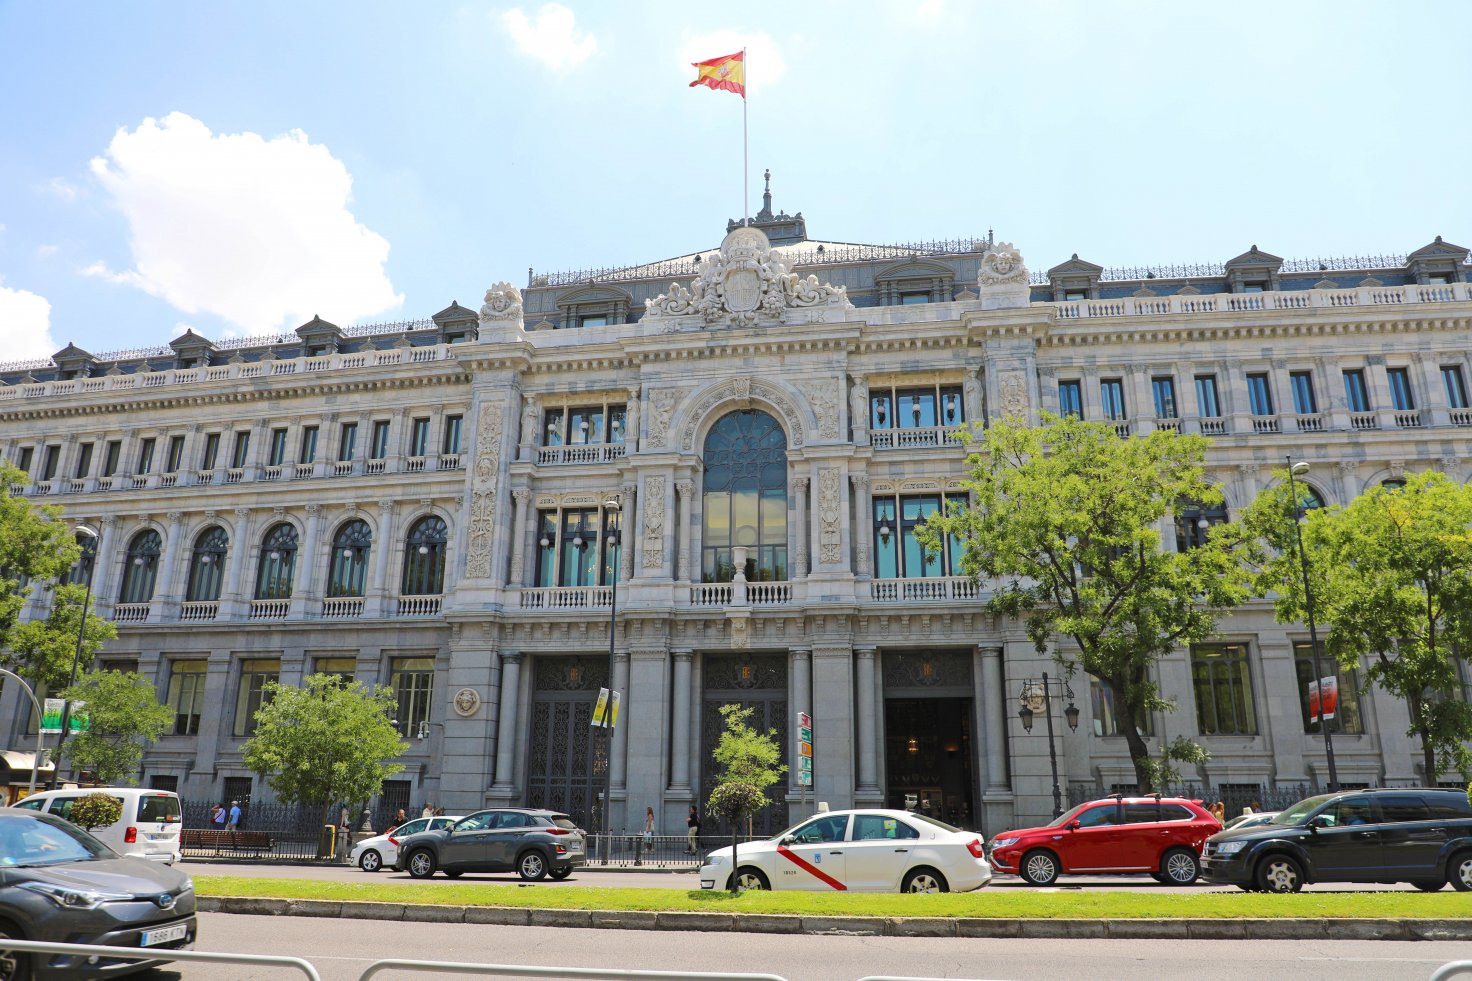 банки в испании